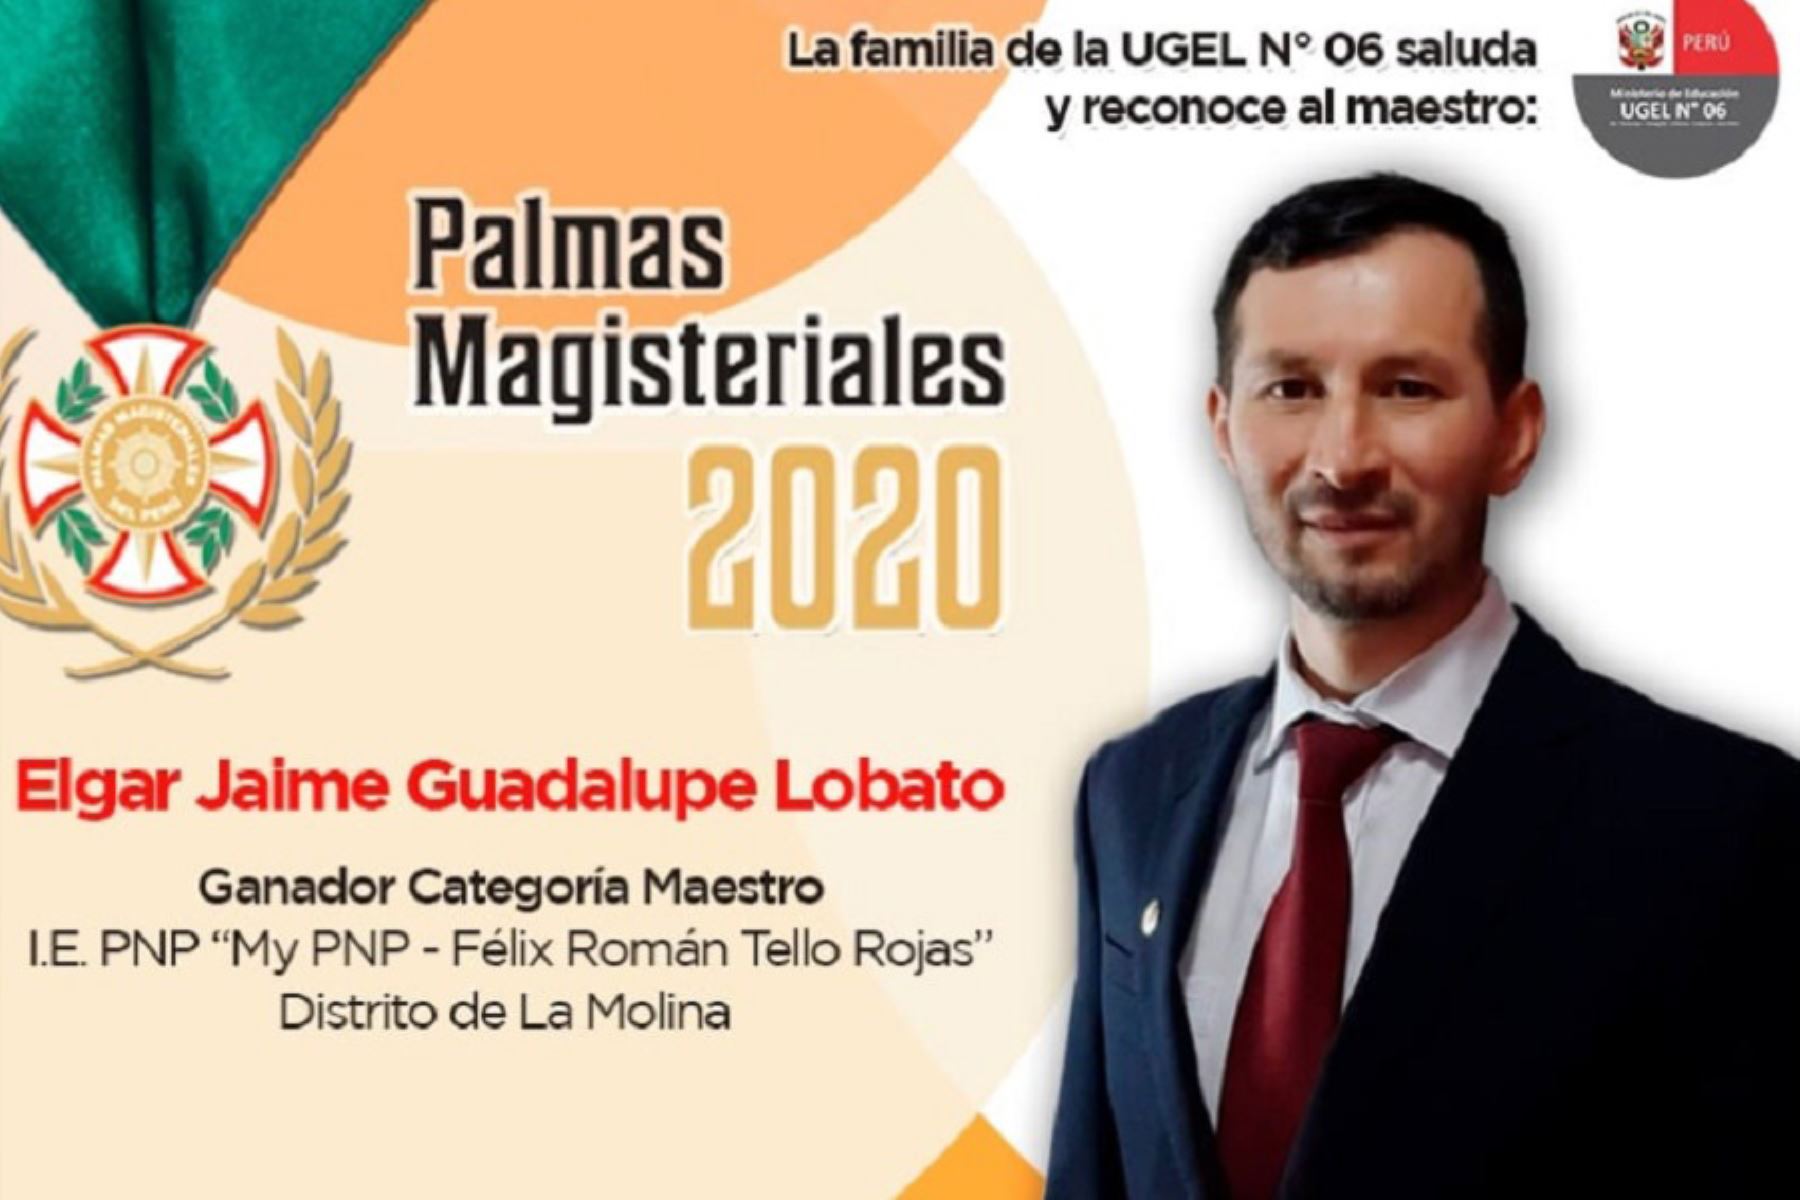 Jaime Guadalupe Lobato, profesor de secundaria y oriundo de la región Amazonas, ganador de las Palmas Magisteriales 2020 en la categoría Maestro. Foto: Facebook/Jaime Guadalupe Lobato